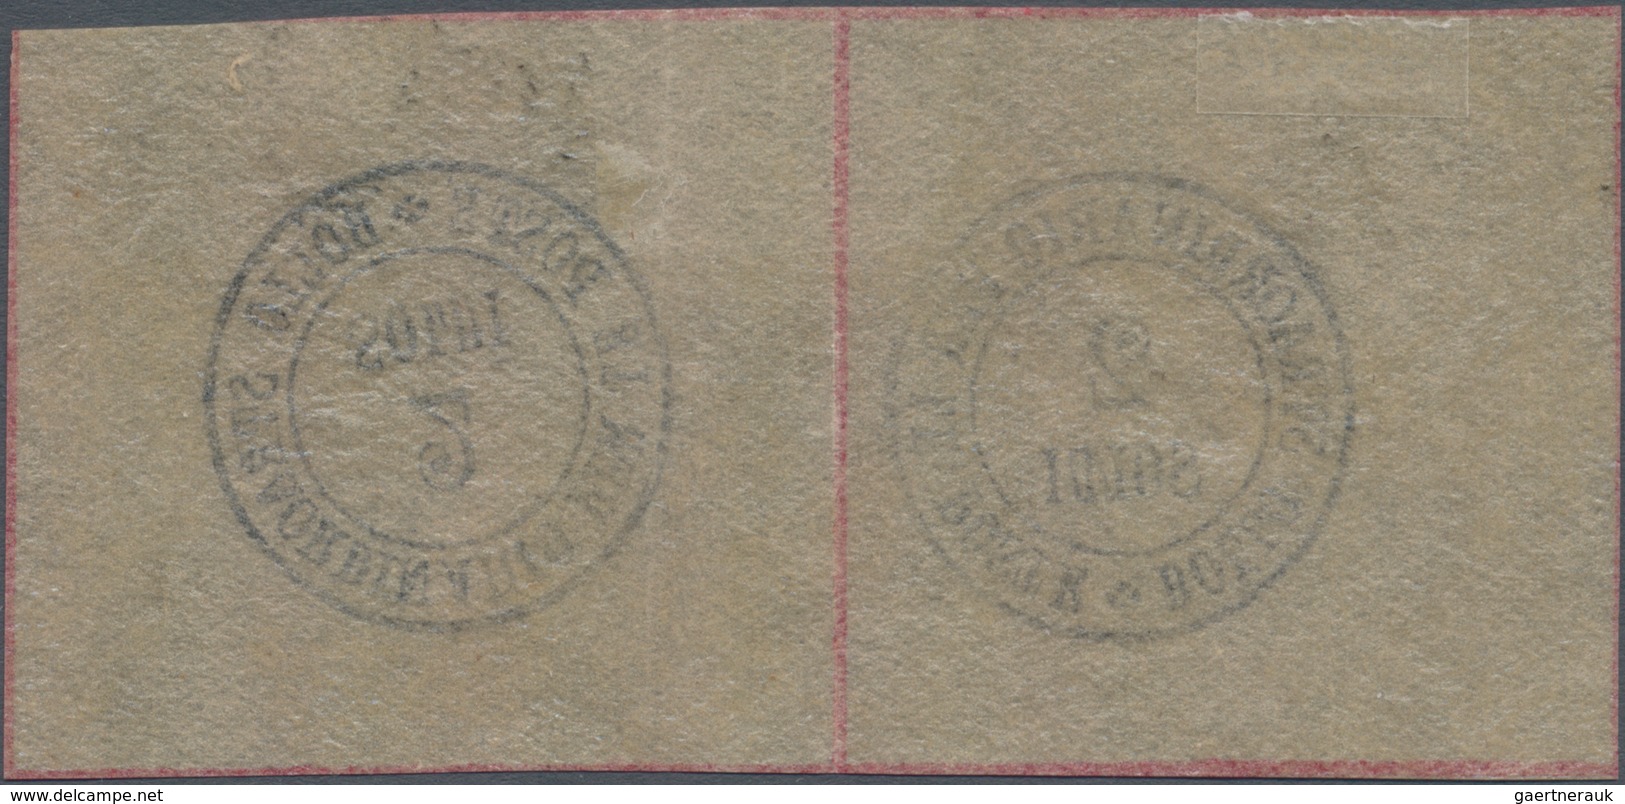 Italien - Altitalienische Staaten: Toscana - Zeitungsstempel: 1854 Newspaper Tax Stamp 2s. Black As - Tuscany